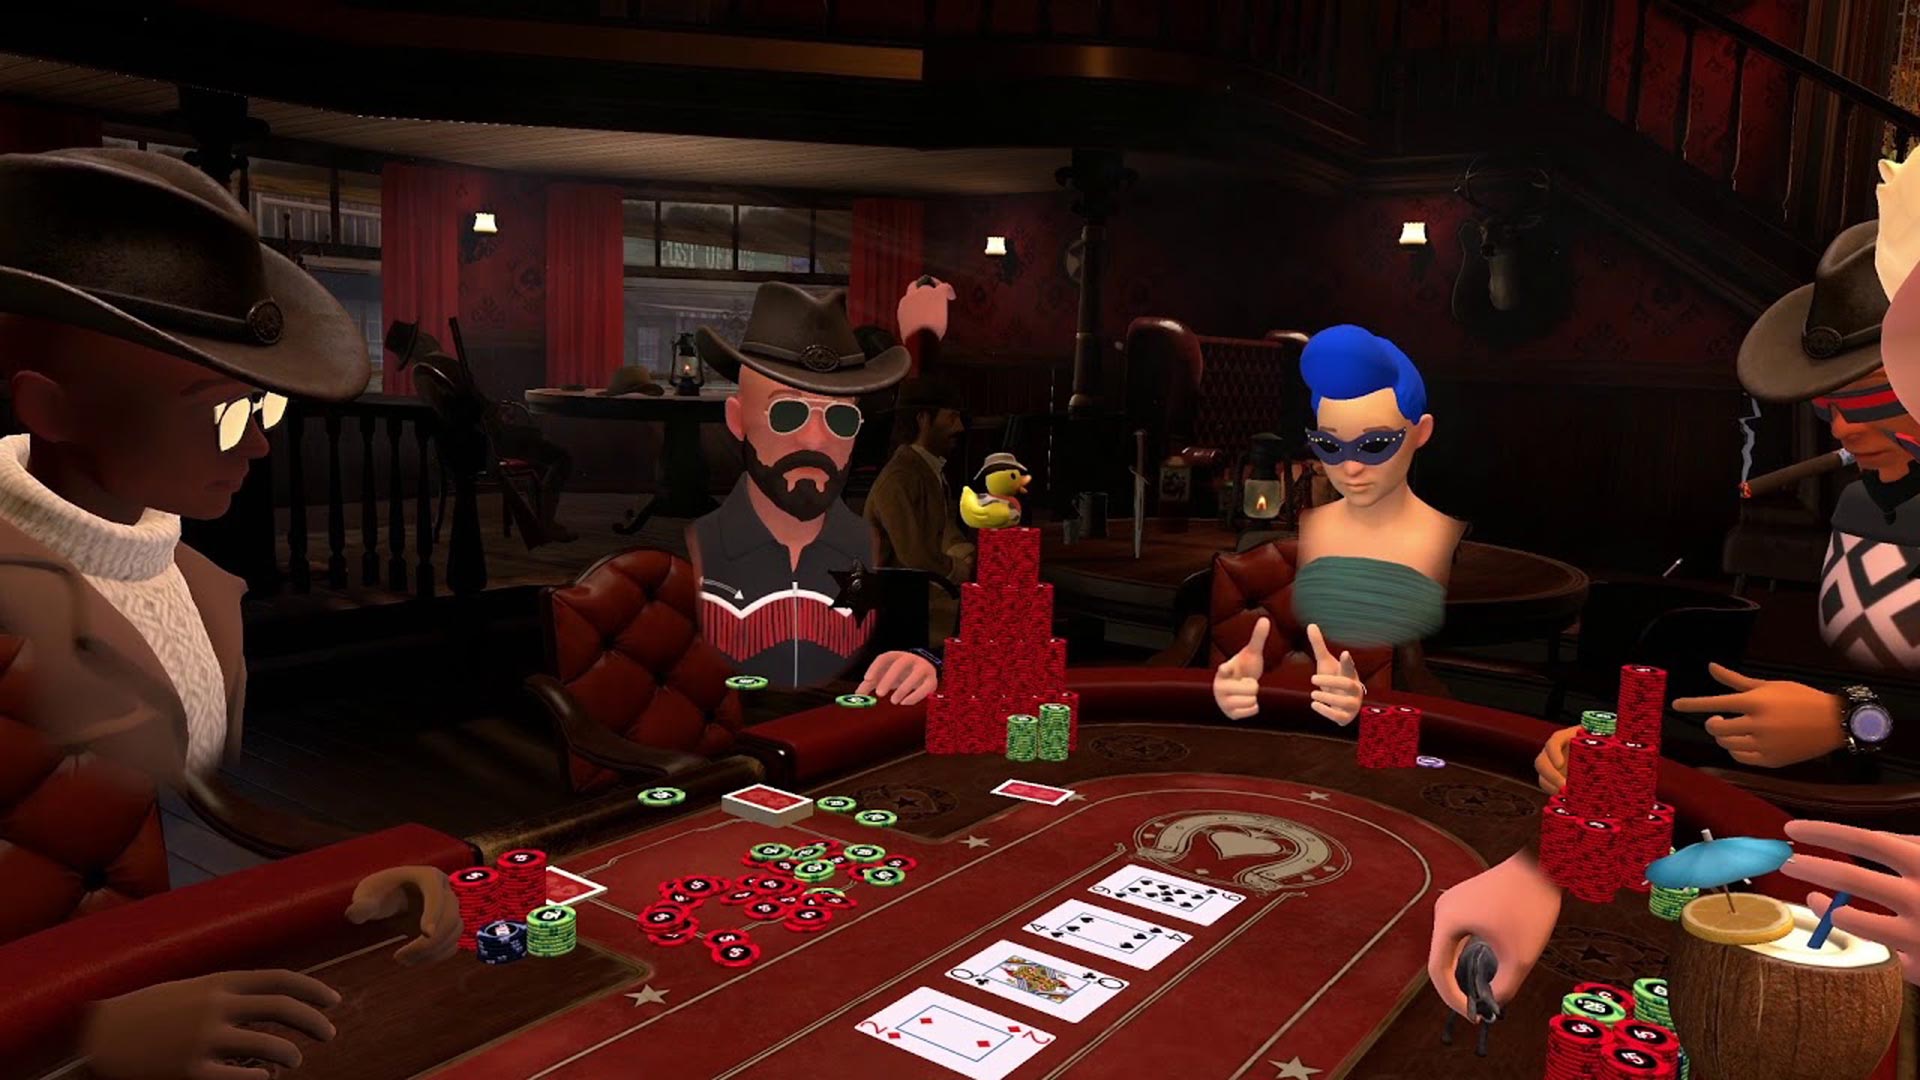 PokerStars VR launch